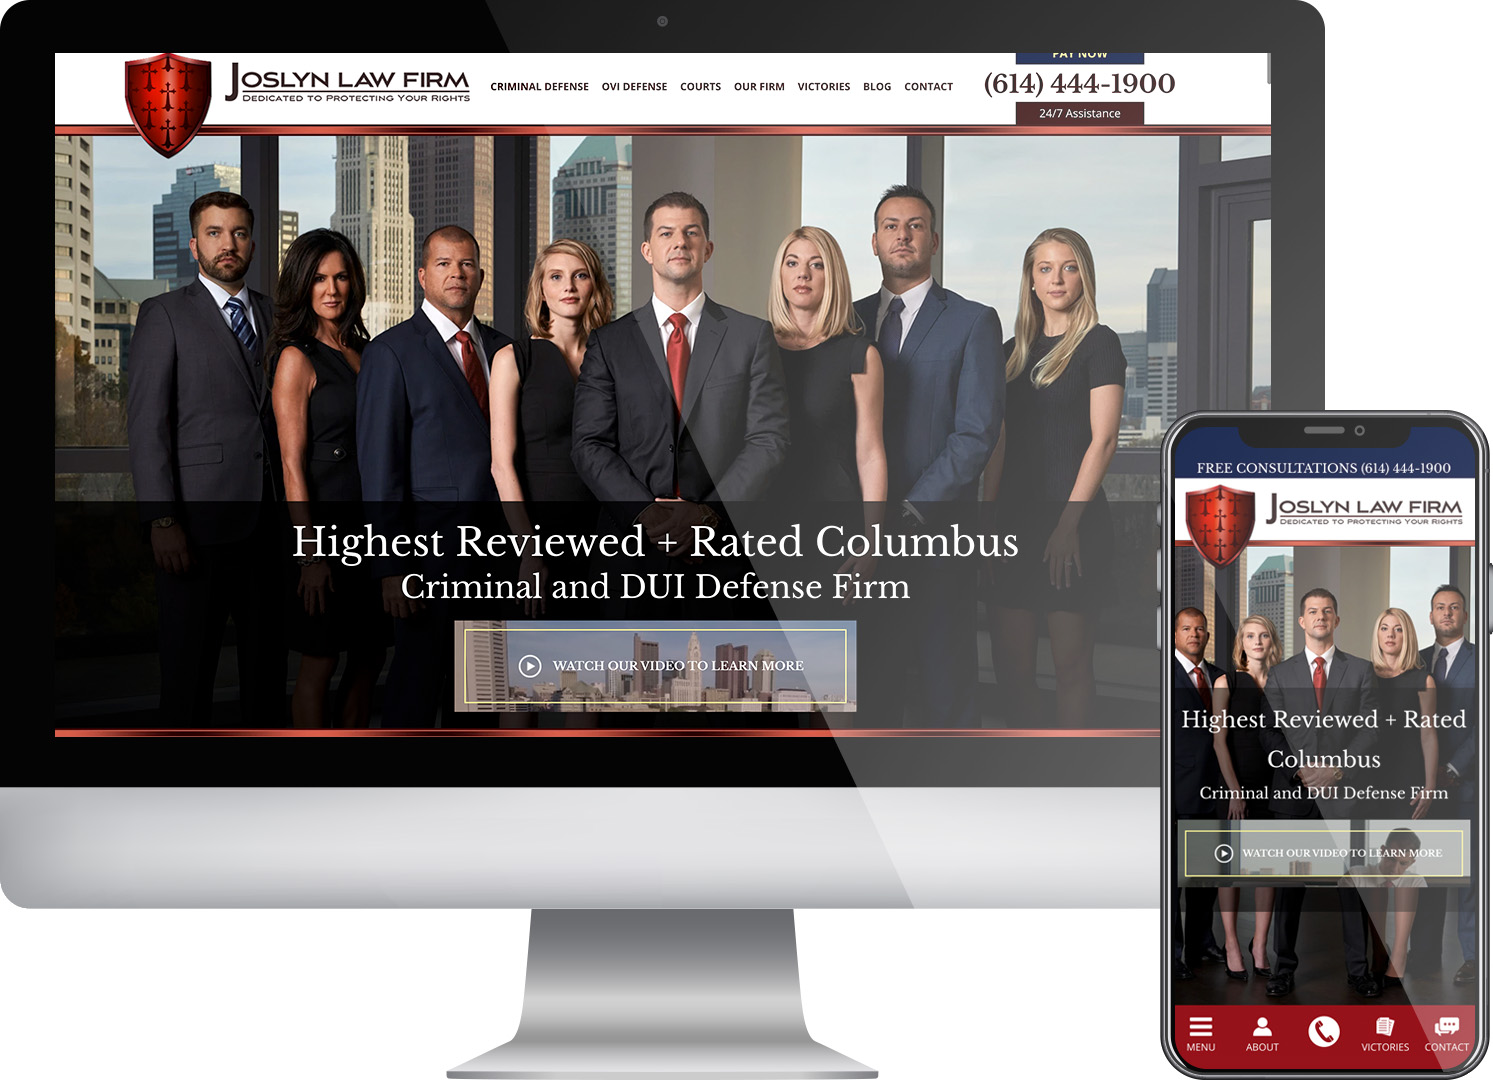 Joslyn Law Firm - website screenshots